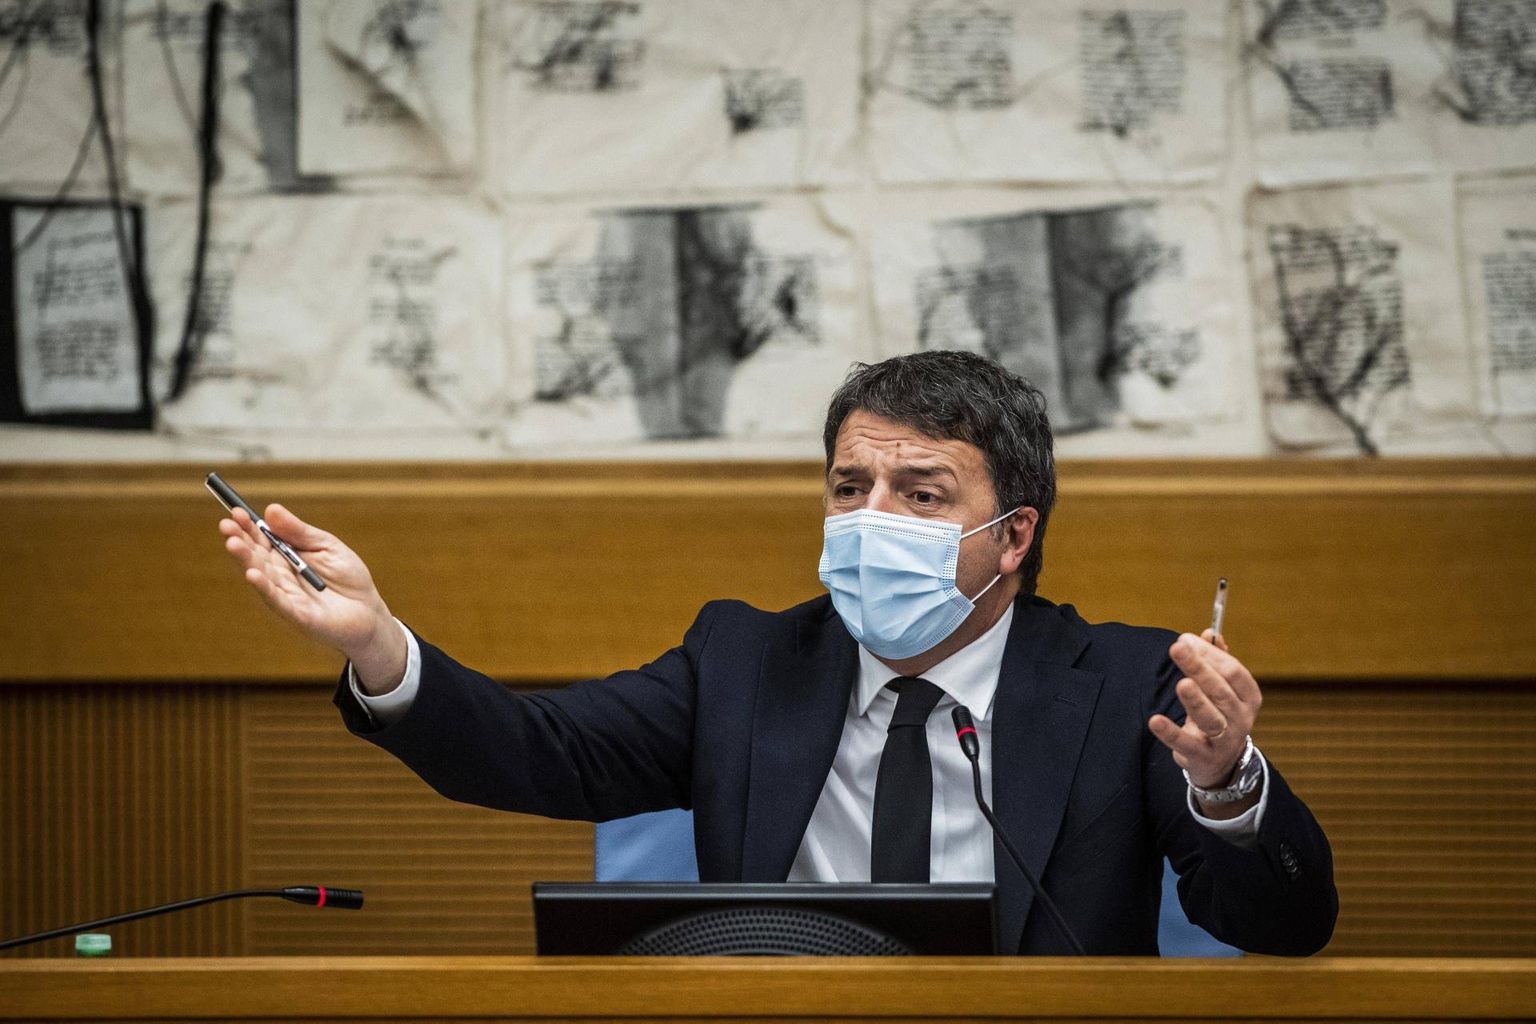 Itaalia ekspeaminister, praegune senaator Matteo Renzi eelmisel kolmapäeval pressikonverentsil selgitamas, miks ta tõmbas valitsusel keset pandeemiat ja majanduskriisi vaiba jalgealt. Itaallaste silmis kannustasid teda vaid oma poliitilised huvid.